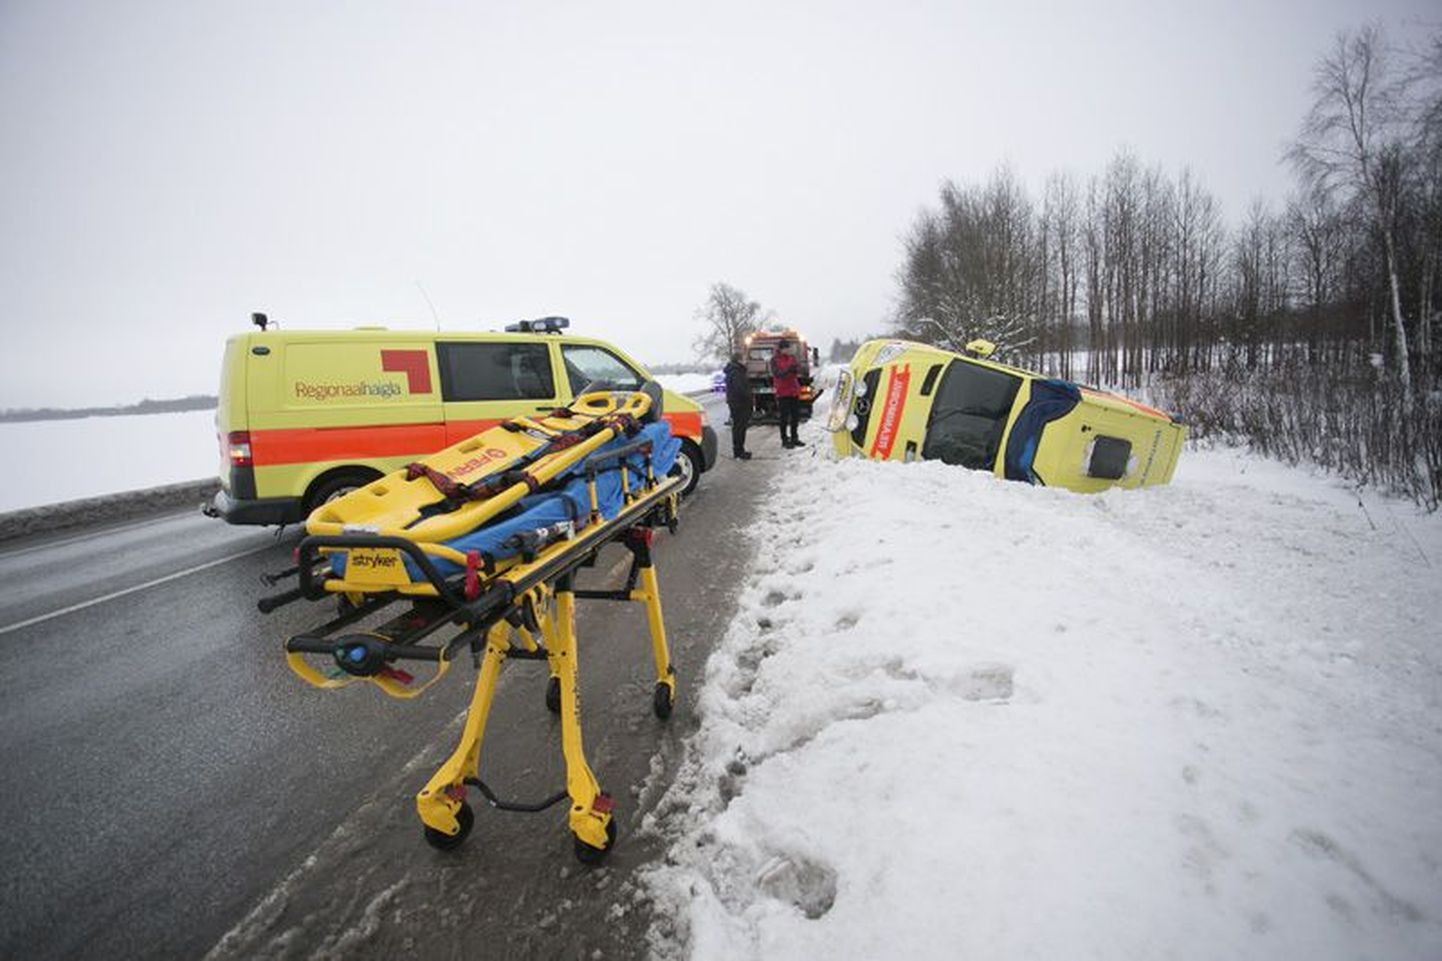 Põhja-Eesti regionaalhaigla reanimobiilid pole varem sellisesse õnnetusse sattunud.